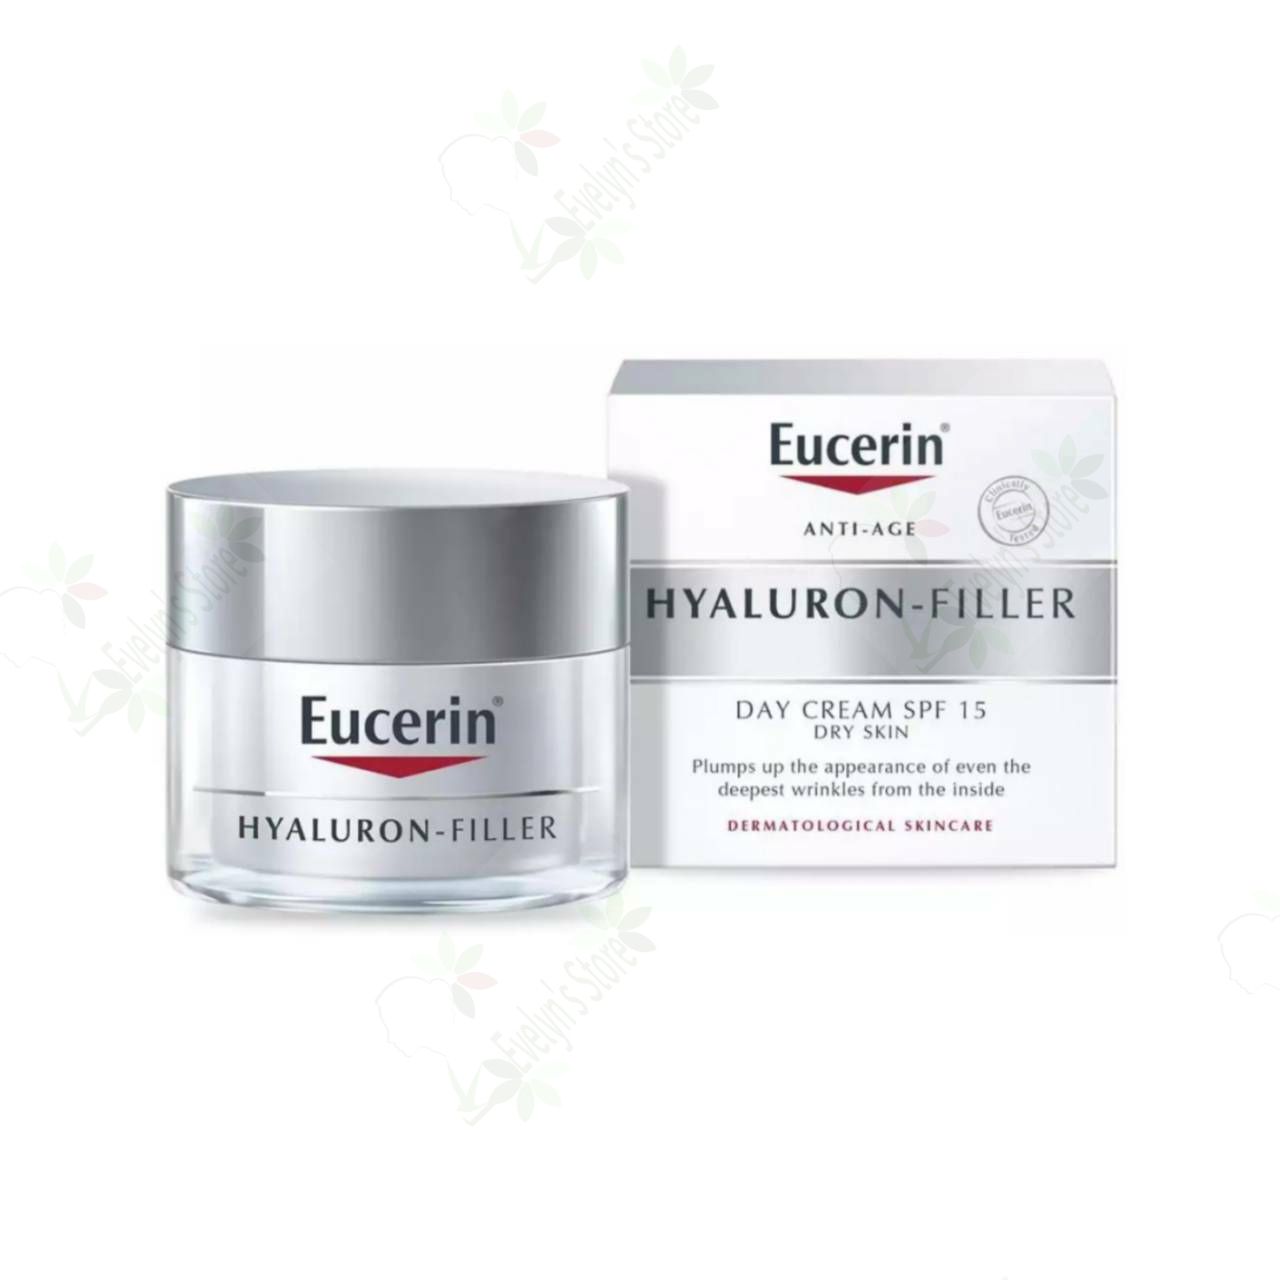 ยูเซอริน ไฮยาลูรอน ฟิลเลอร์ เดย์ ครีม 50มล. (ไฮยาเดย์) Eucerin Hyaluron-Filler Day Cream 50ml. ช่วยลดเลือนริ้วรอย และยกกระชับผิวหย่อนคล้อย